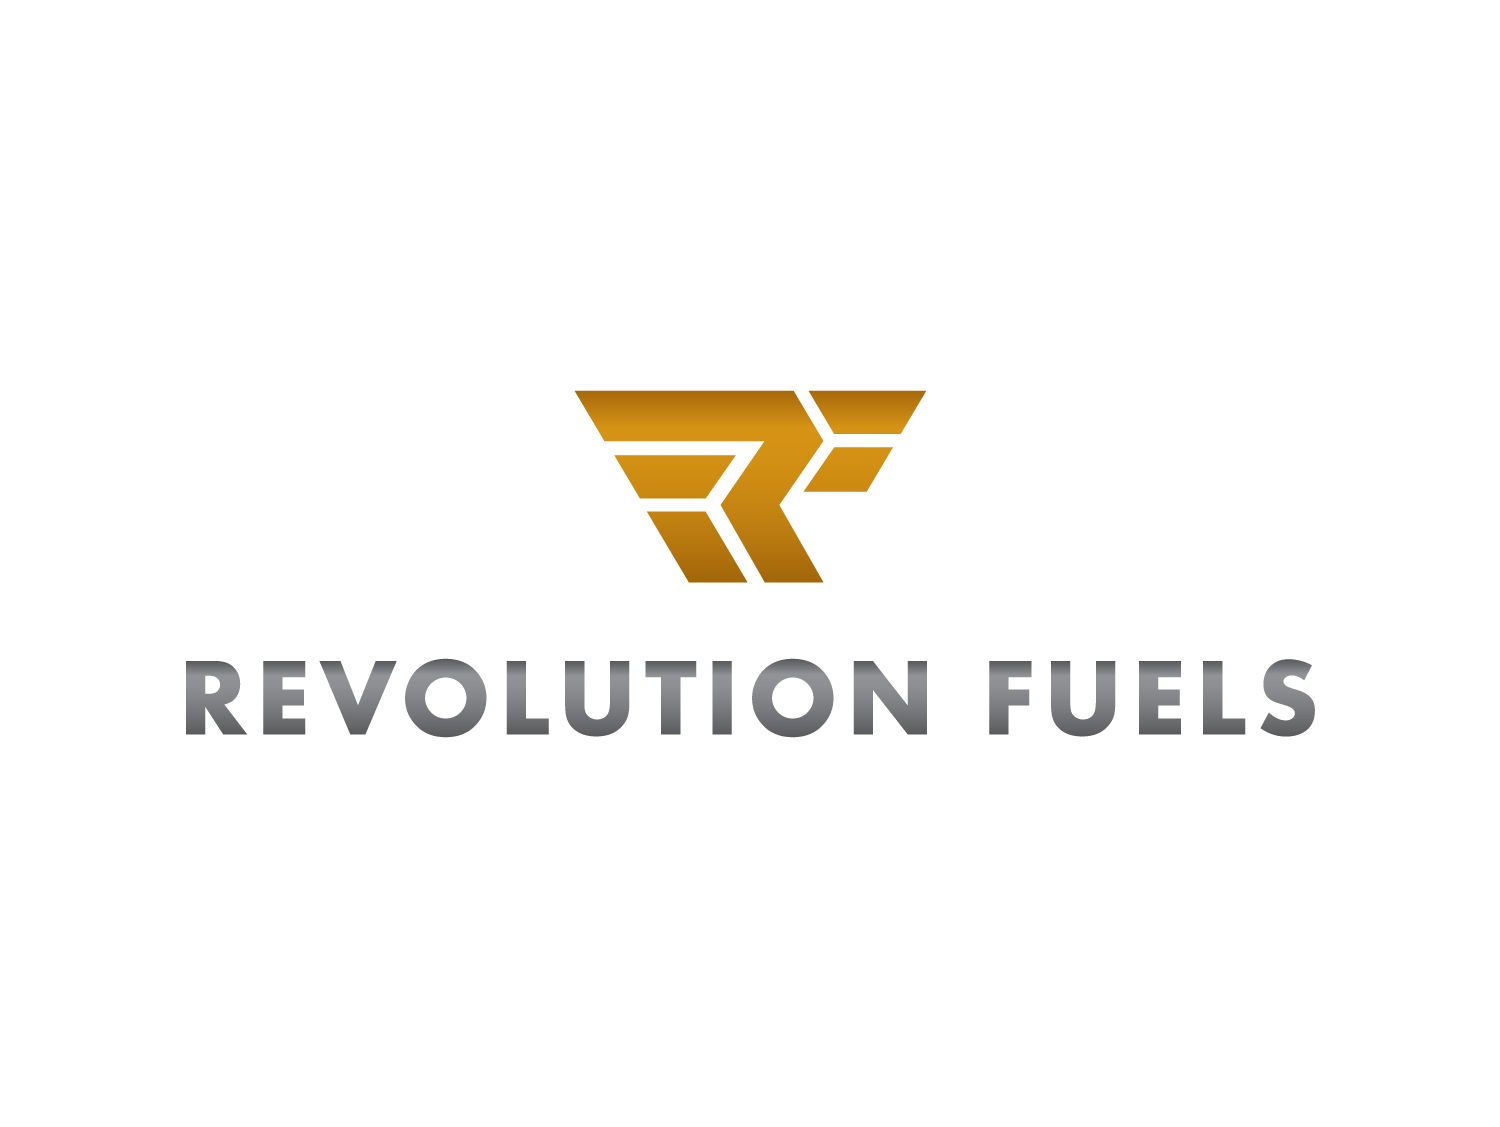 Revolution-Fuels-logo-01-.jpg